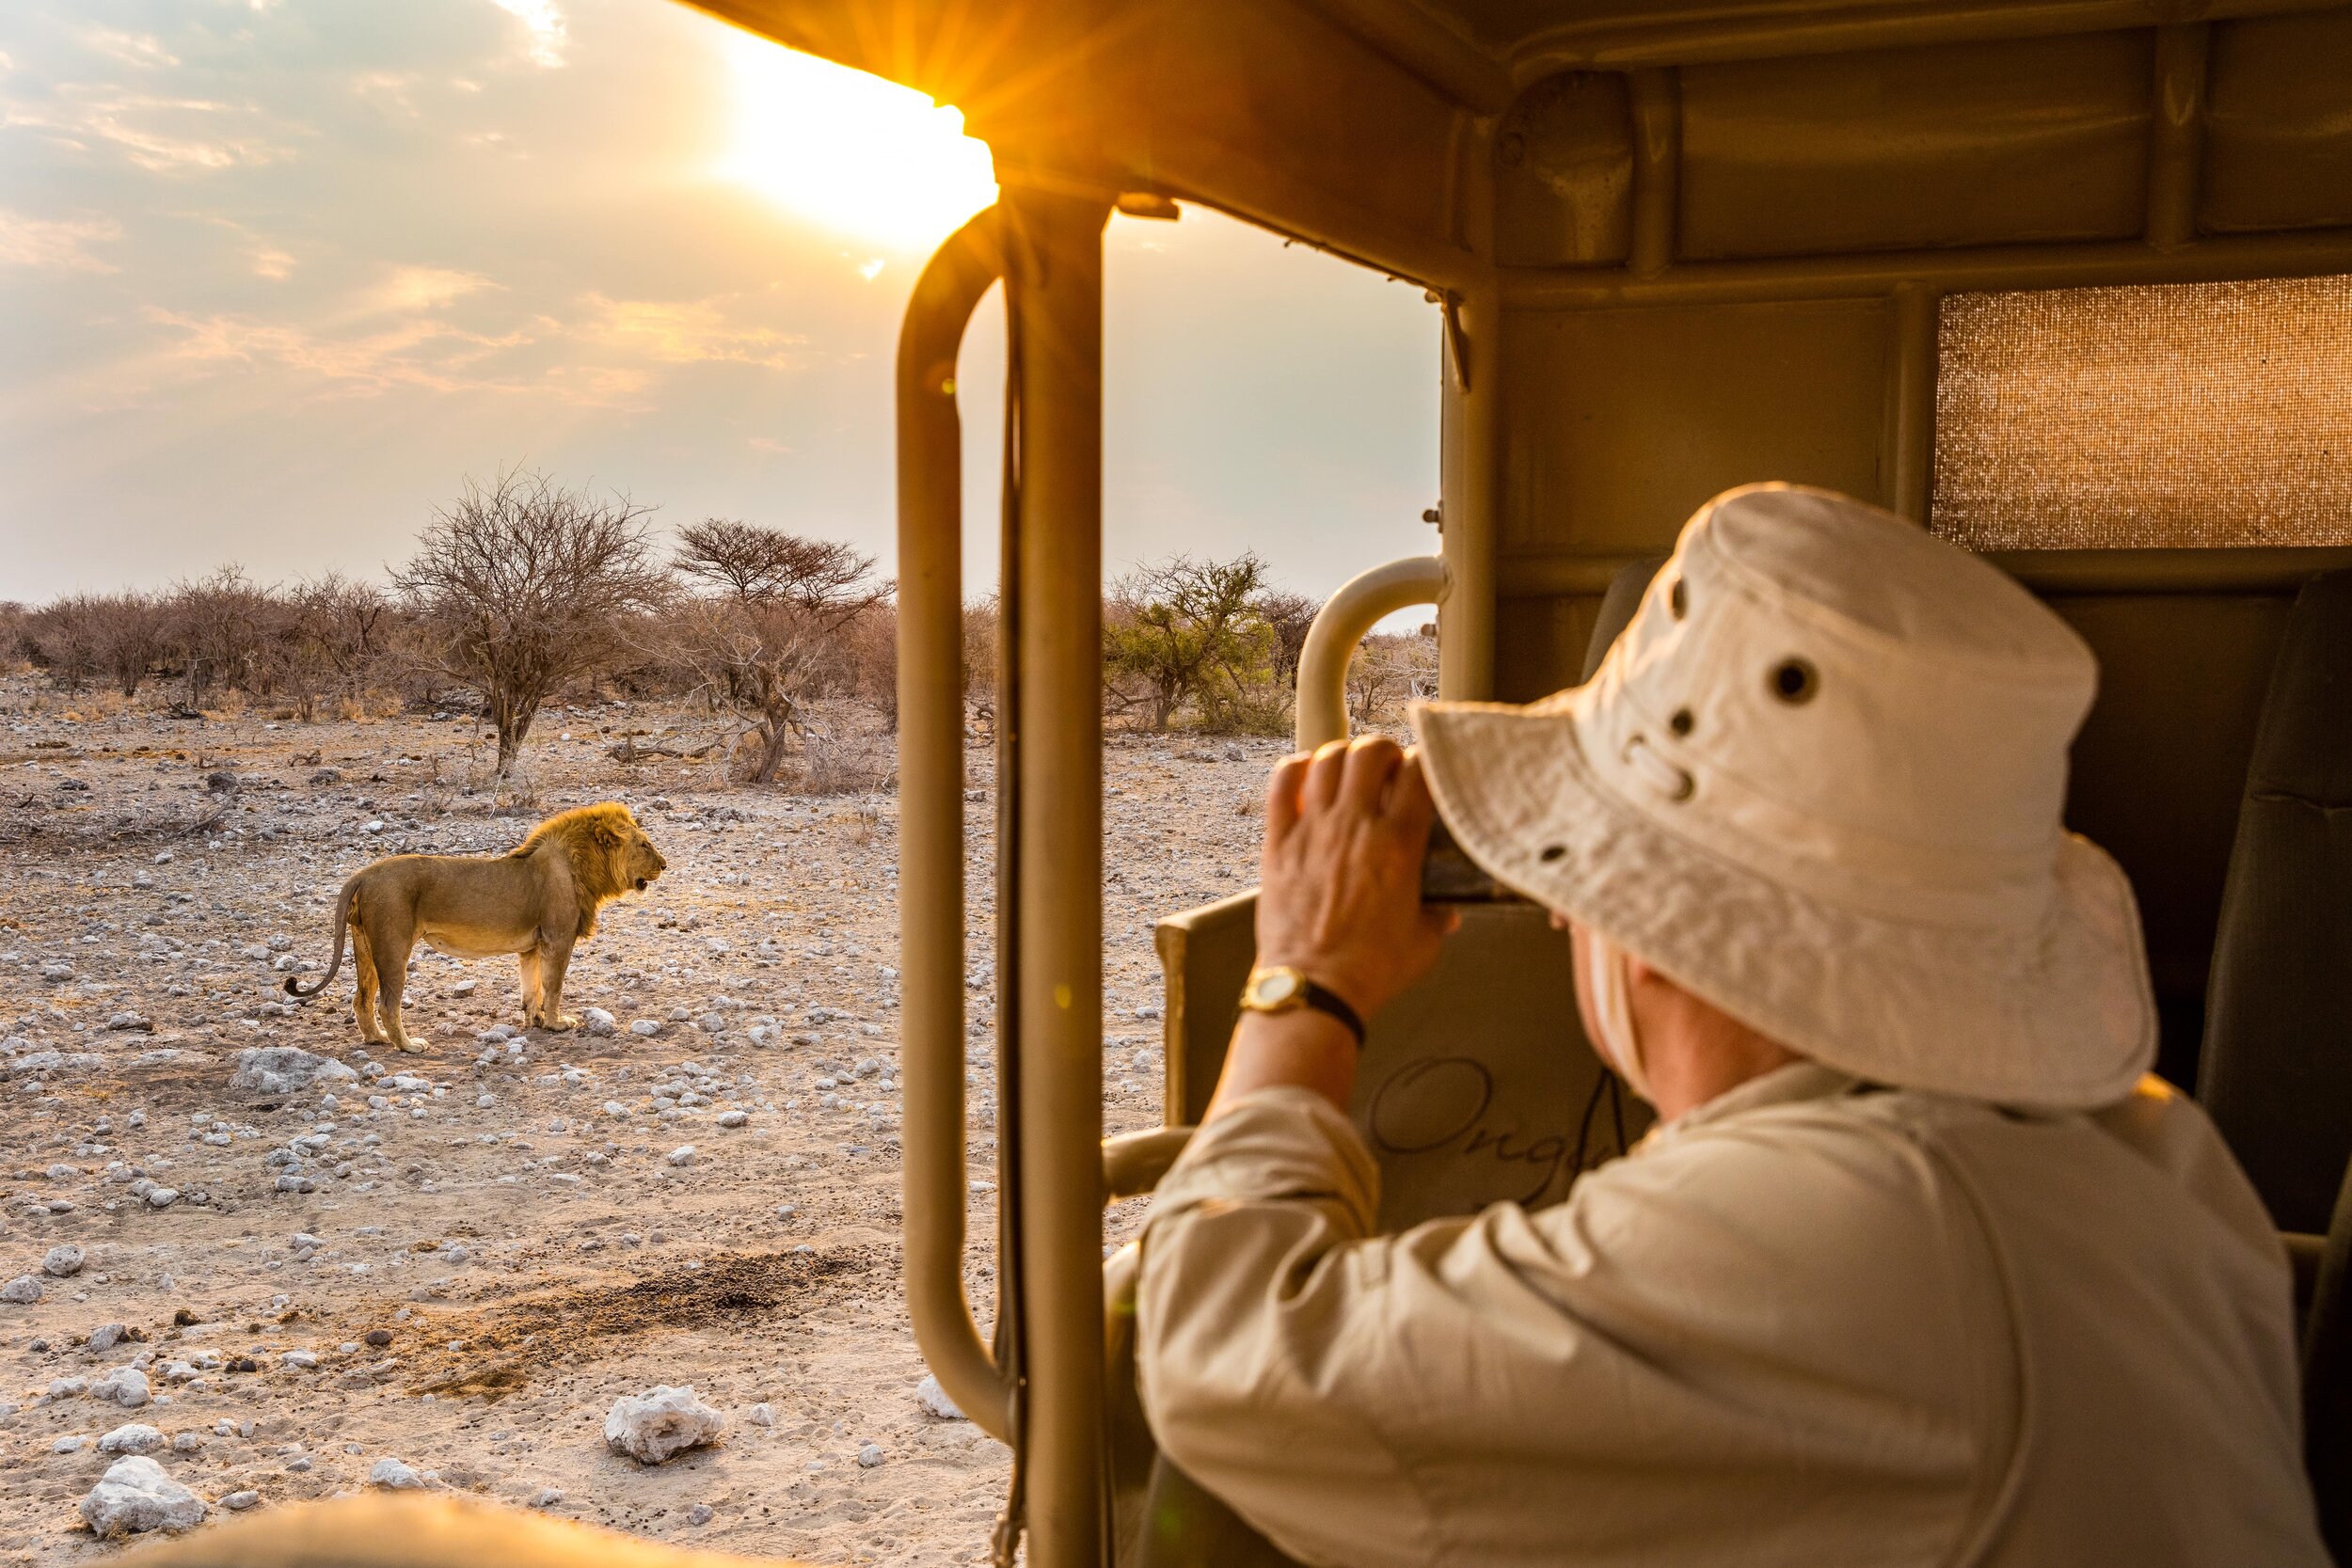 The safari experiences are world-class.